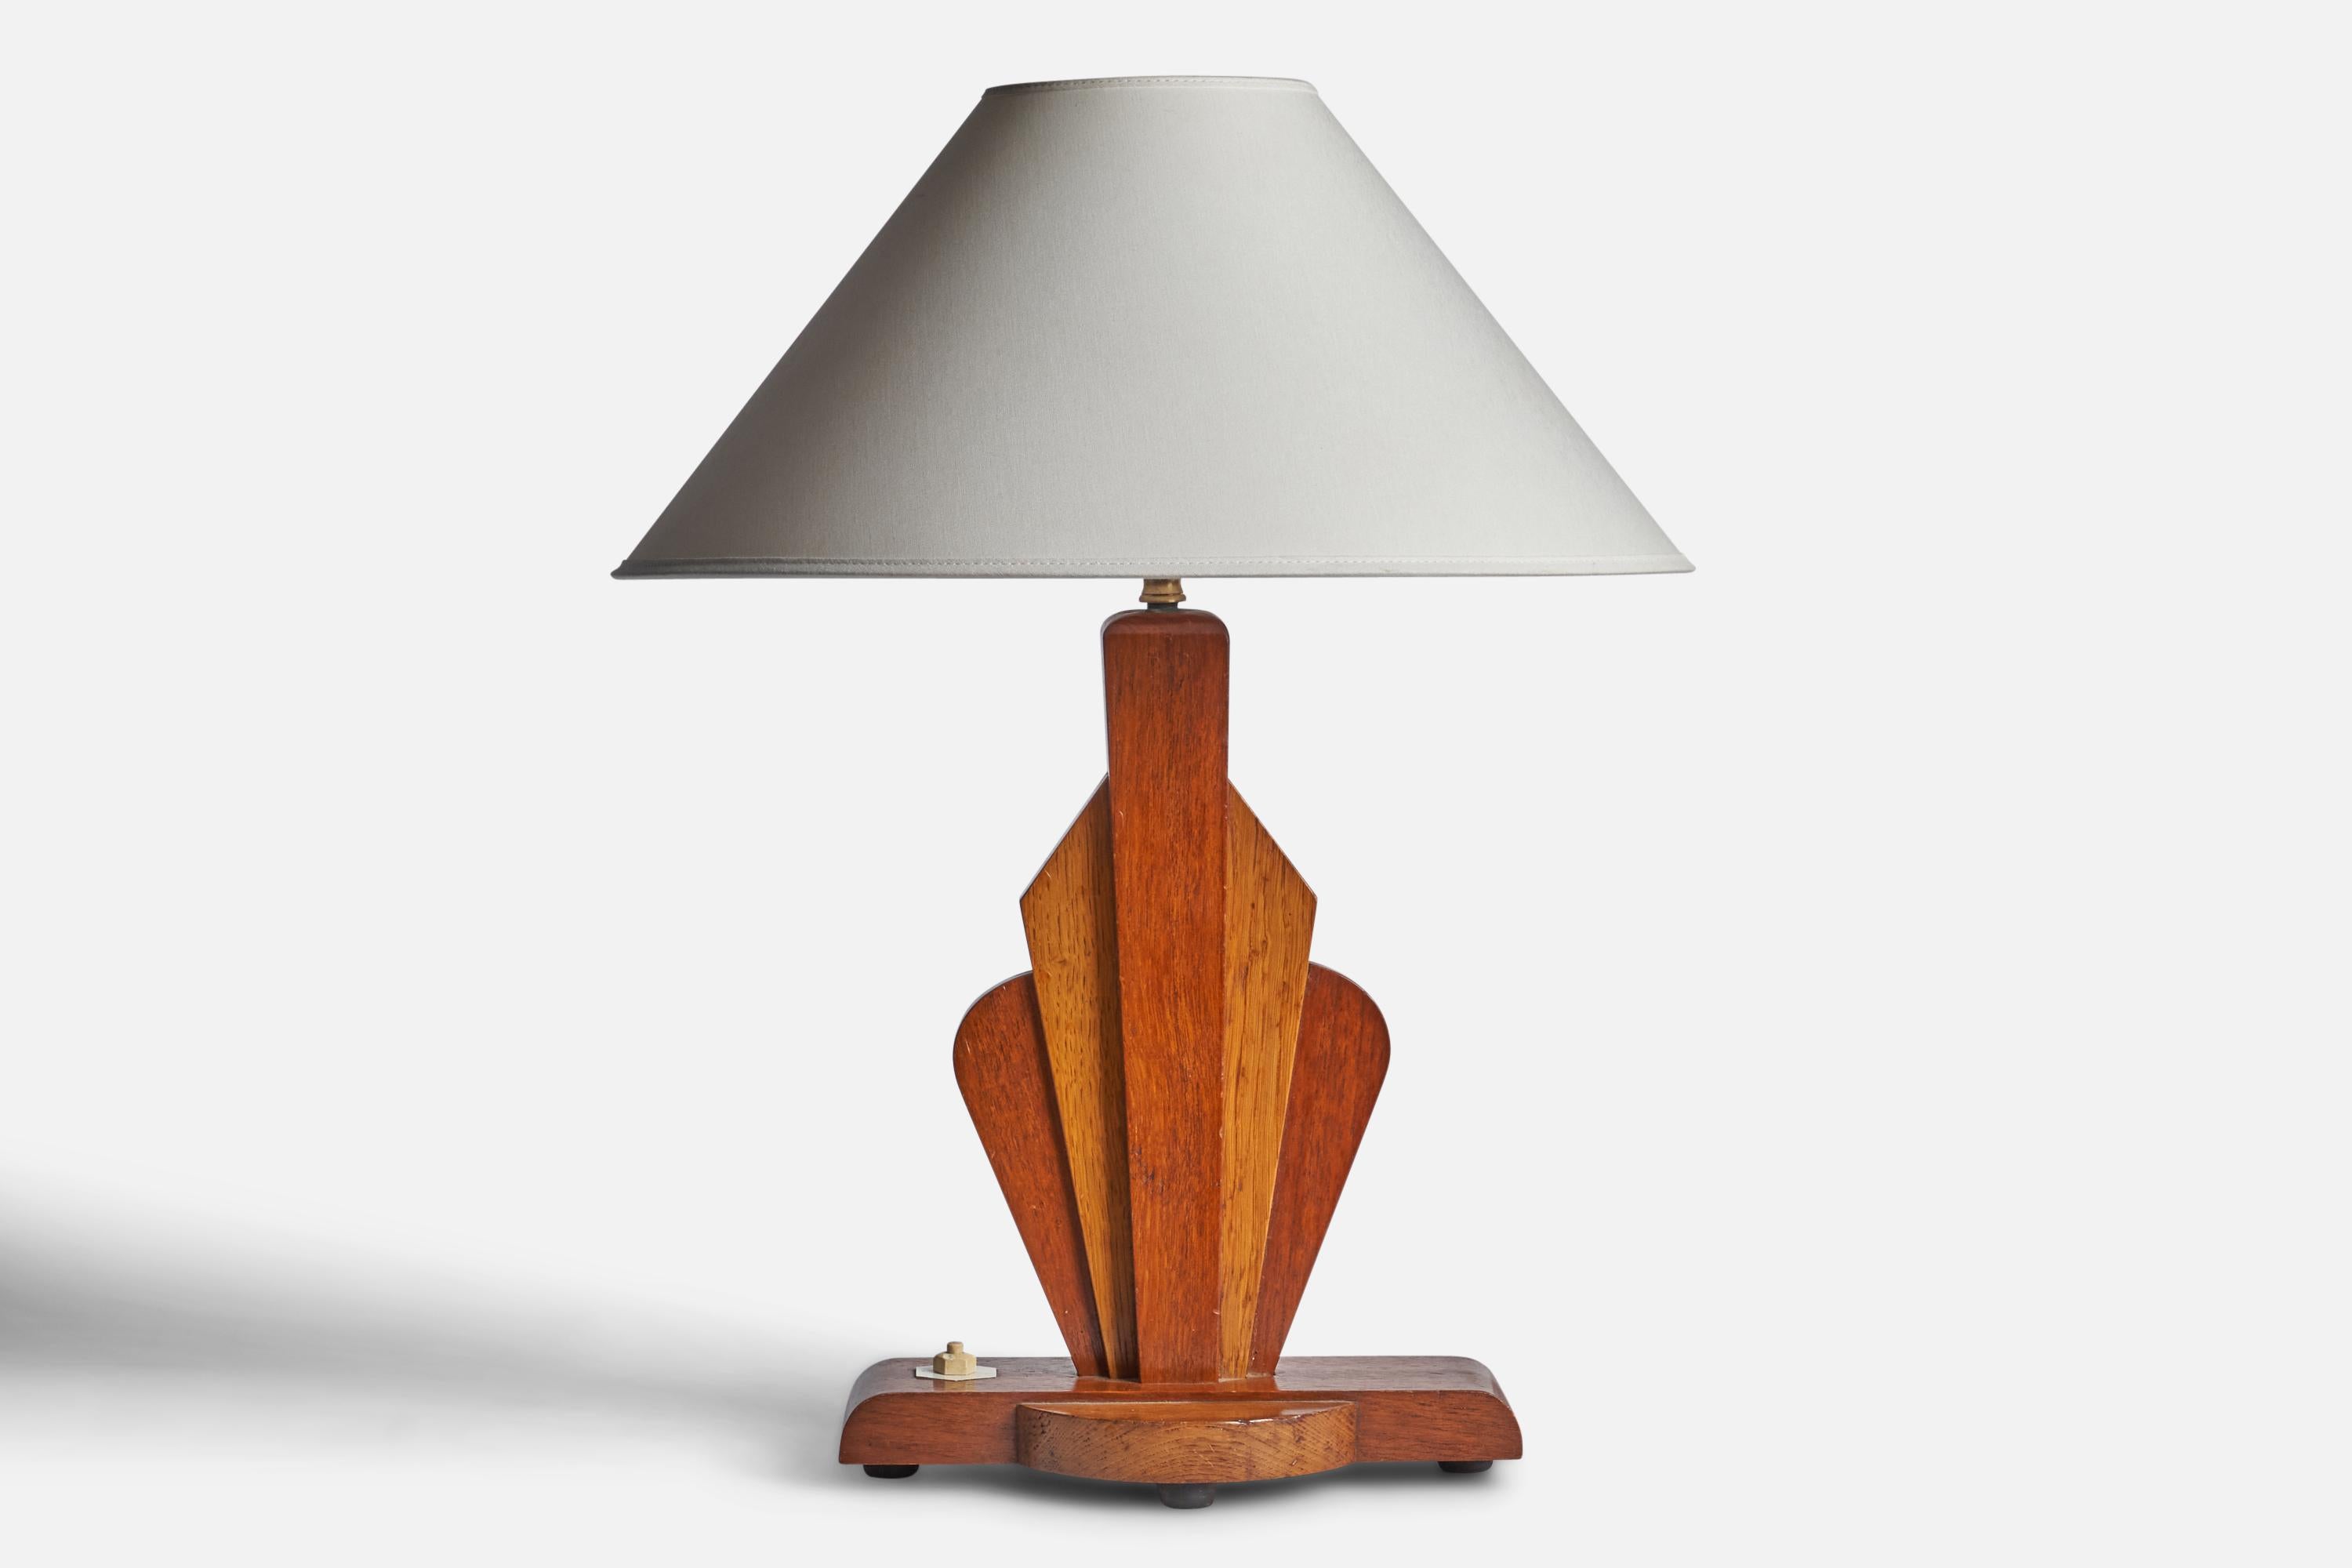 Lampe de table en bouleau et en teck conçue et produite aux États-Unis, c.1950.

Dimensions de la lampe (pouces) : 16.25